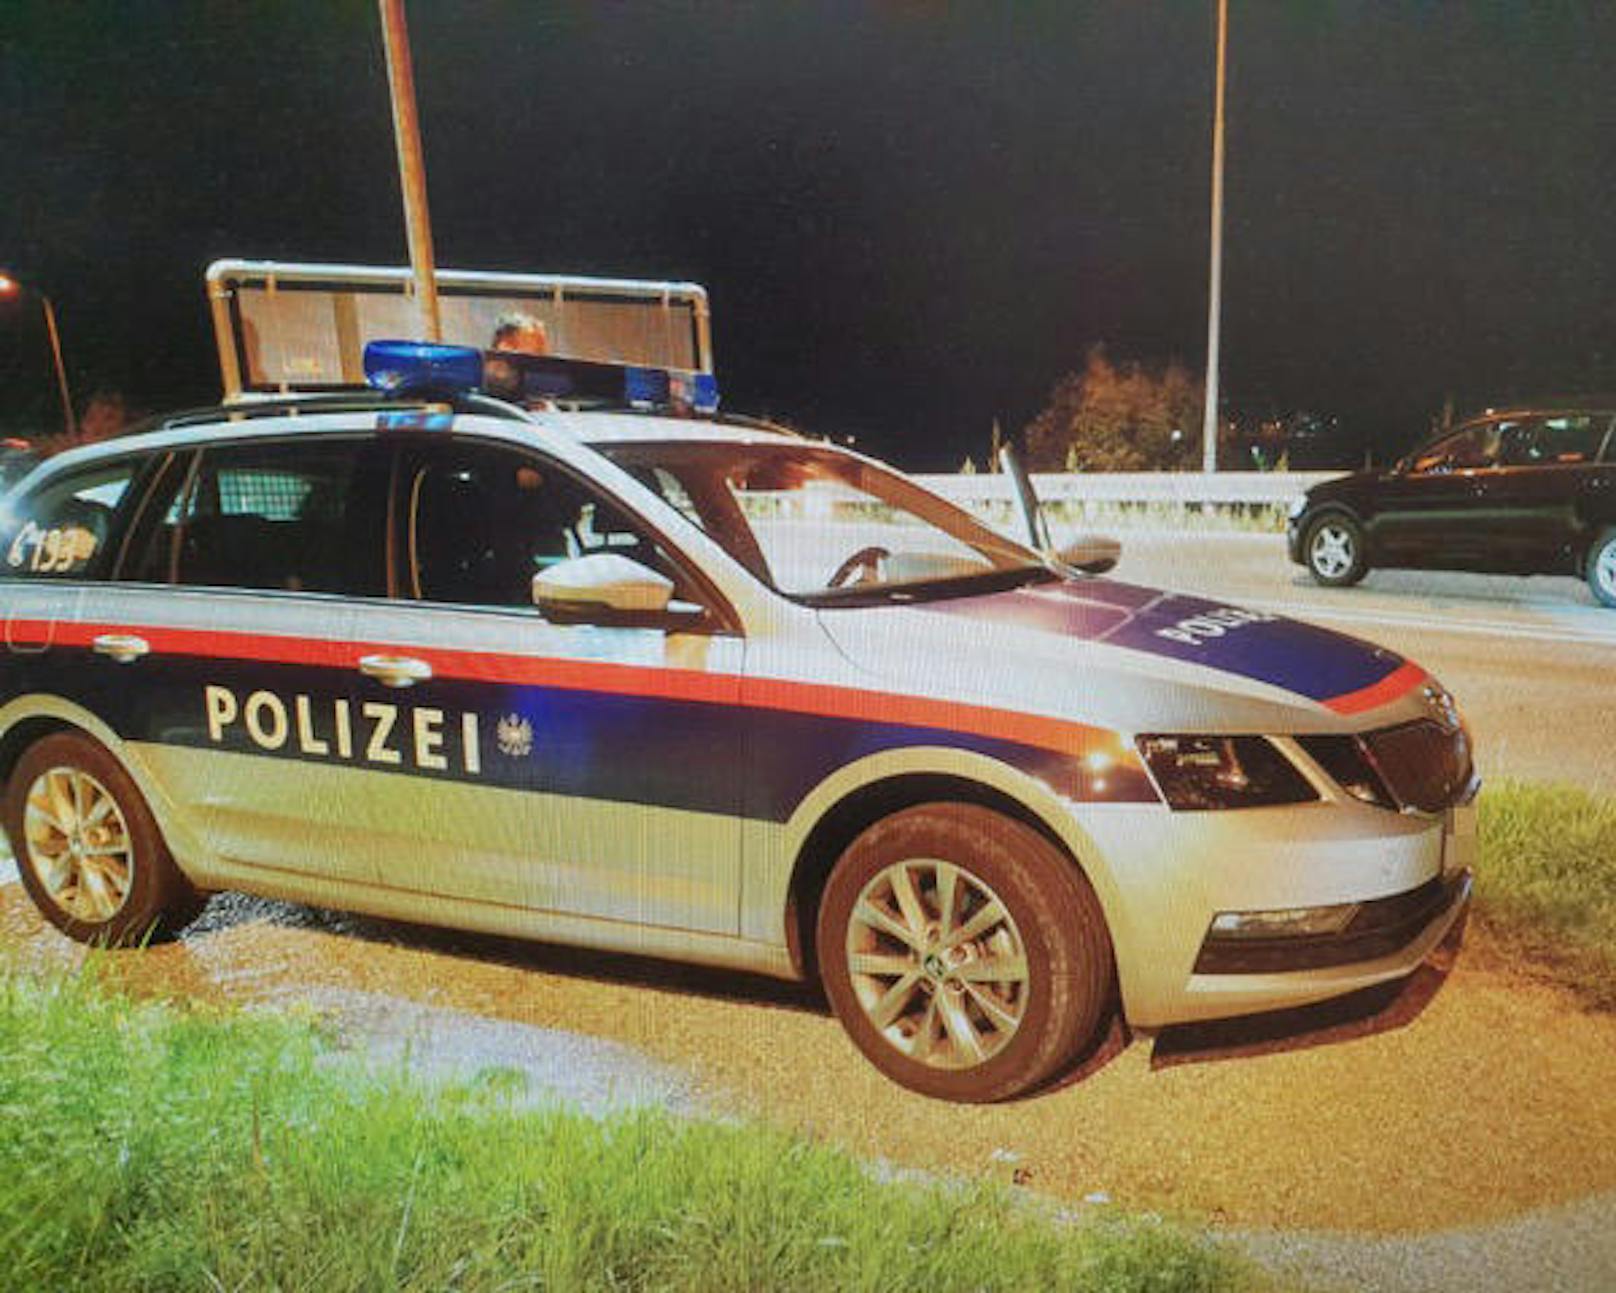 Nach einem tödlichen Überfall auf eine Pensionistin in ihrem eigenen Haus in Edlitz fahndete die Polizei großräumig nach den Tätern.